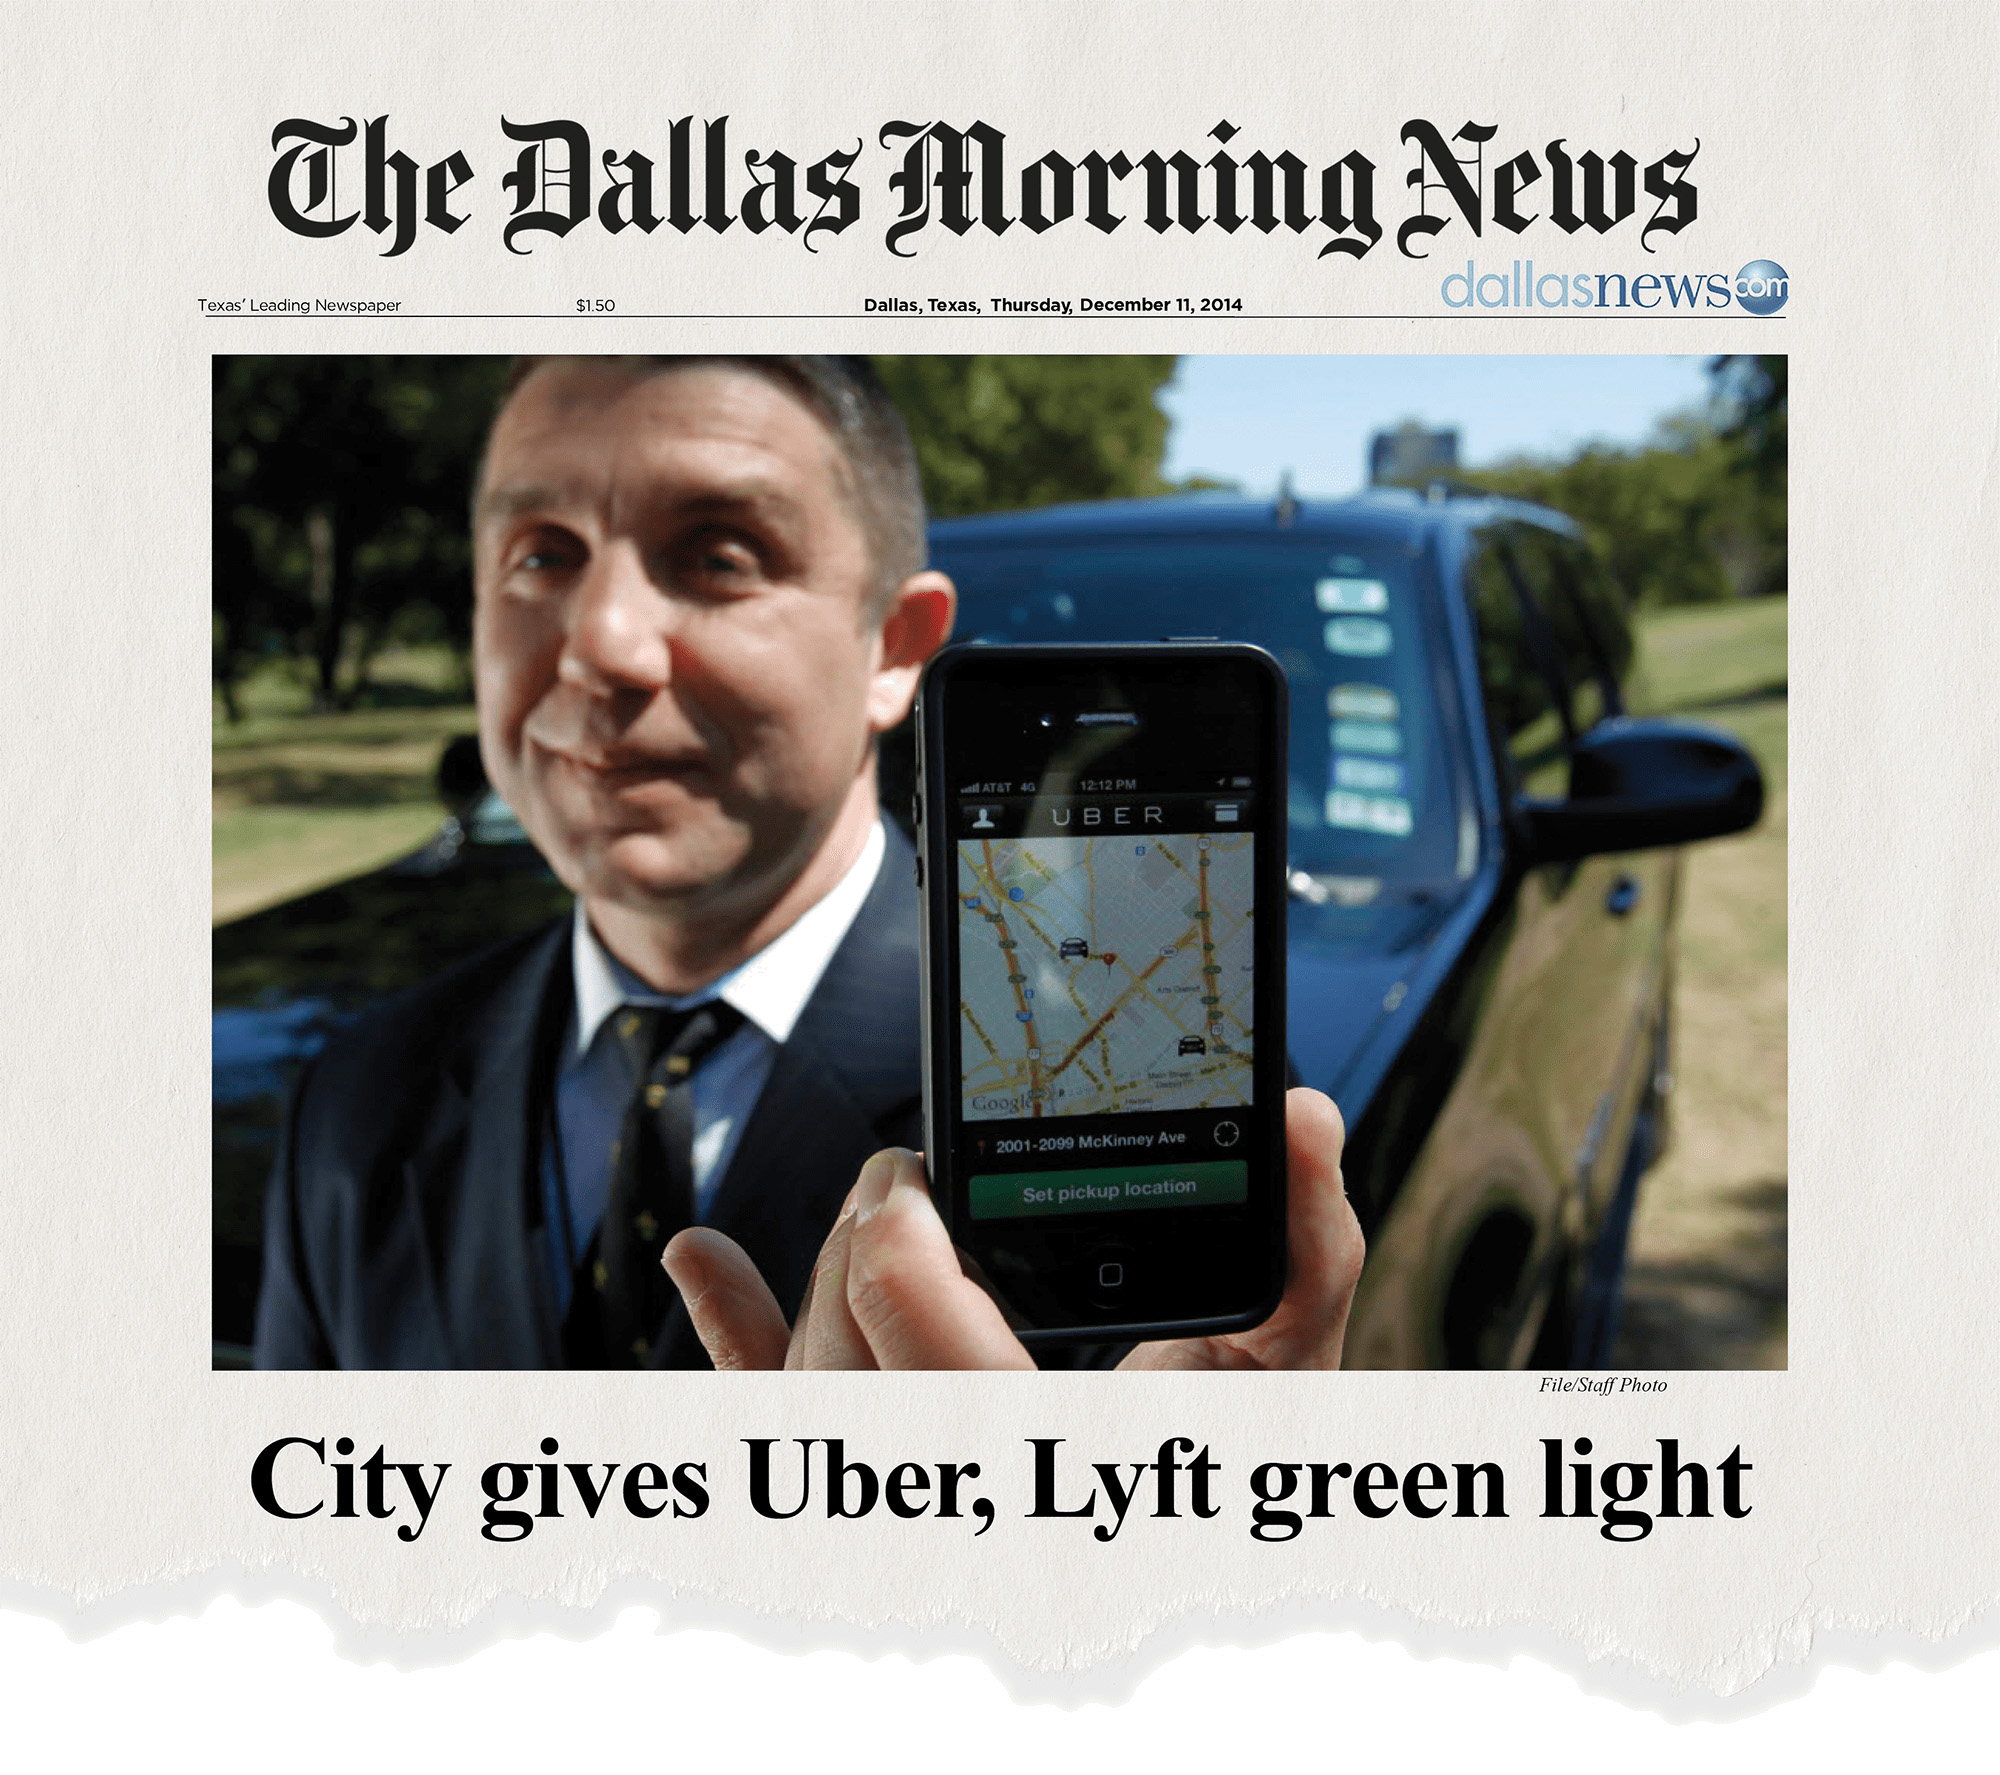 Uber, The Dallas Morning News, Allyn Media